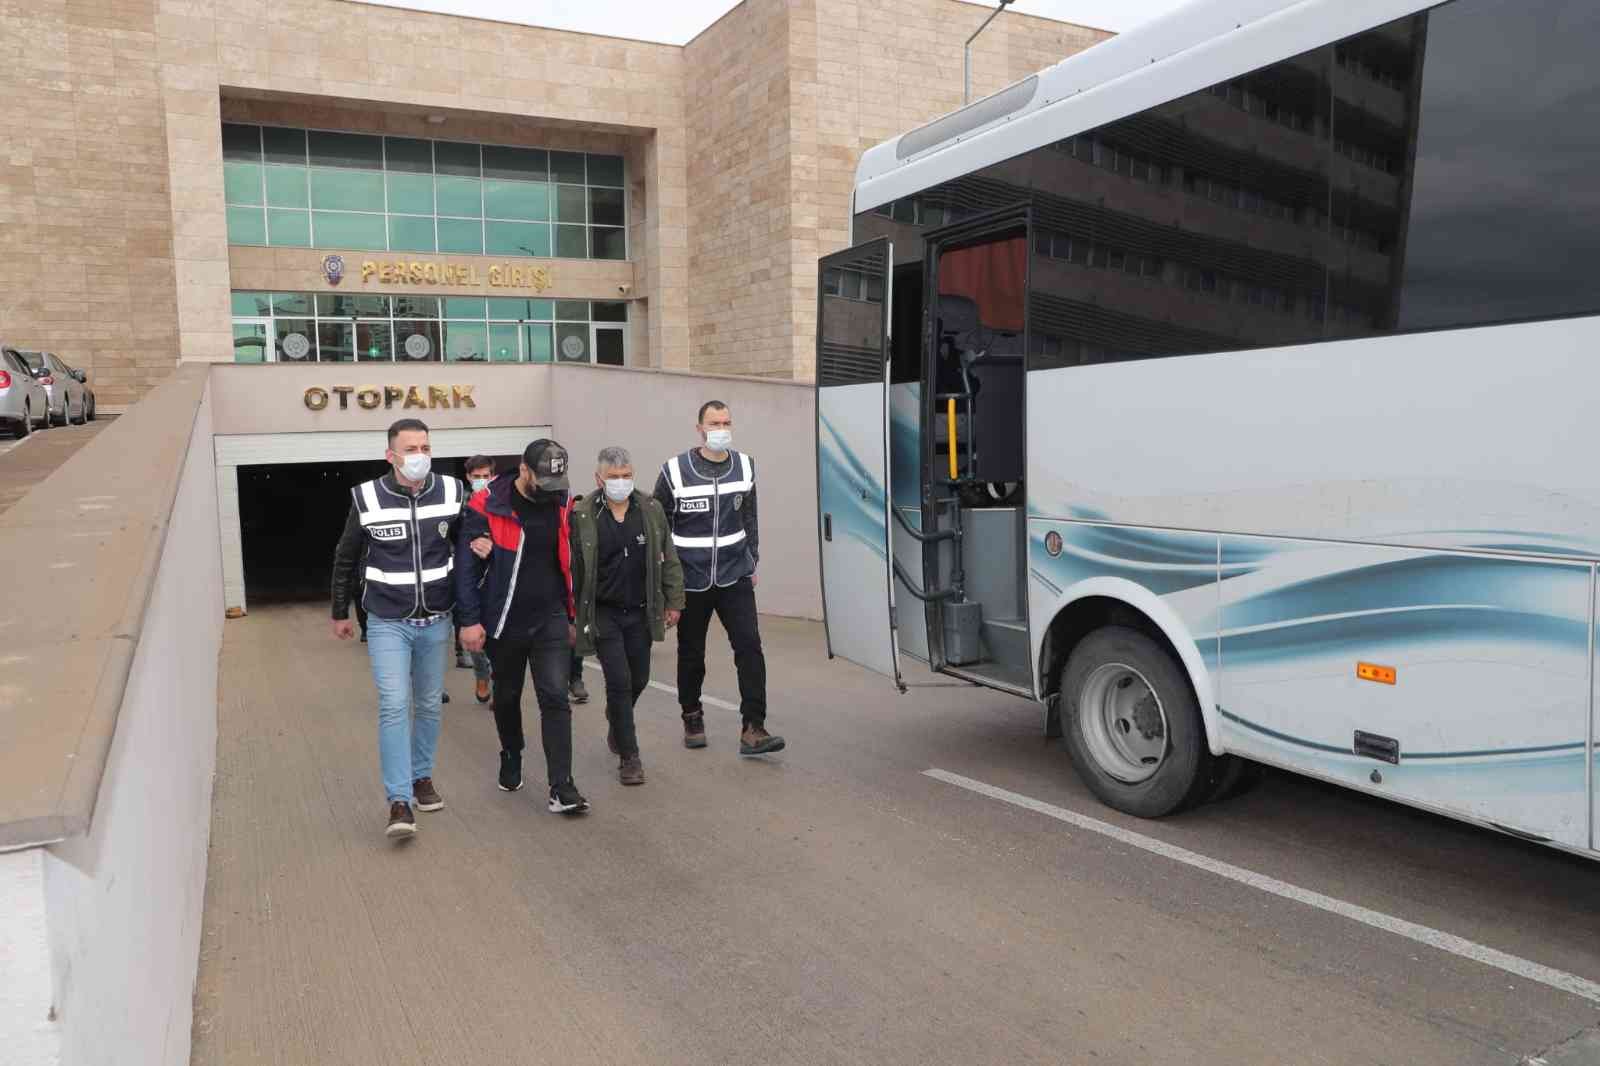 Antalya’da eş zamanlı ‘aranan şahıs’ operasyonu: 55 gözaltı #antalya